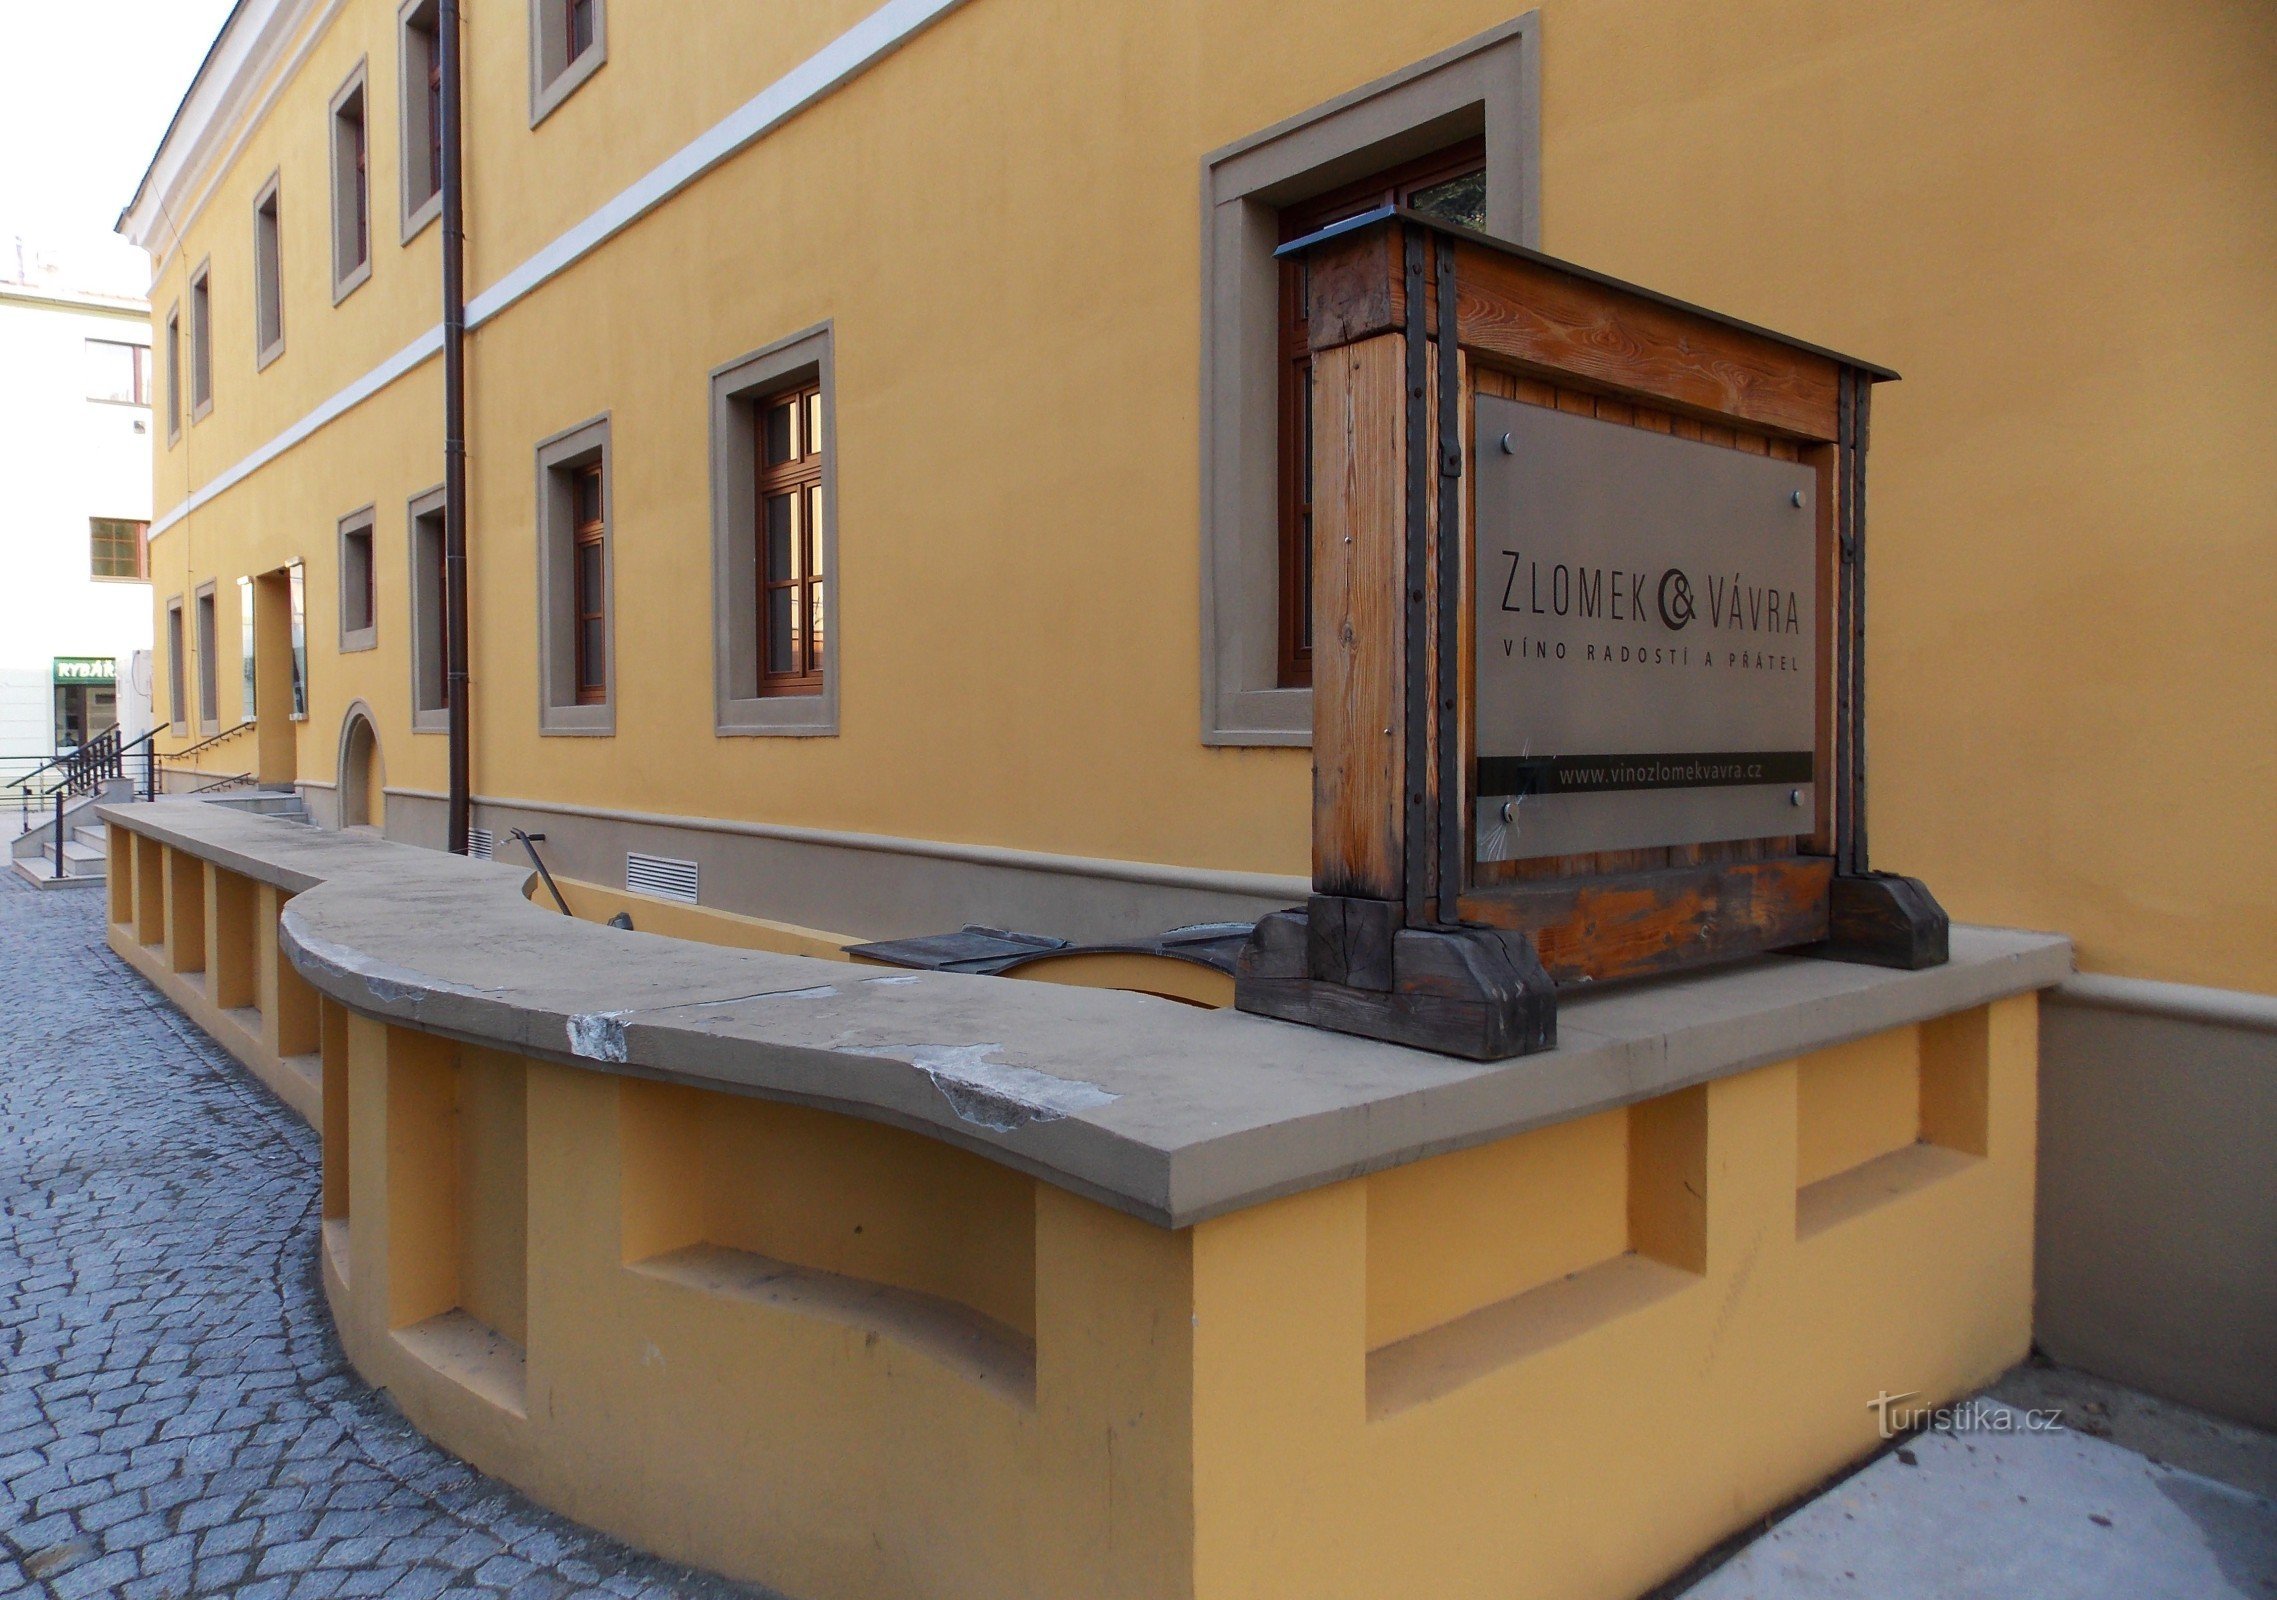 Galleri med slovakiska viner i Uh. Hradišti